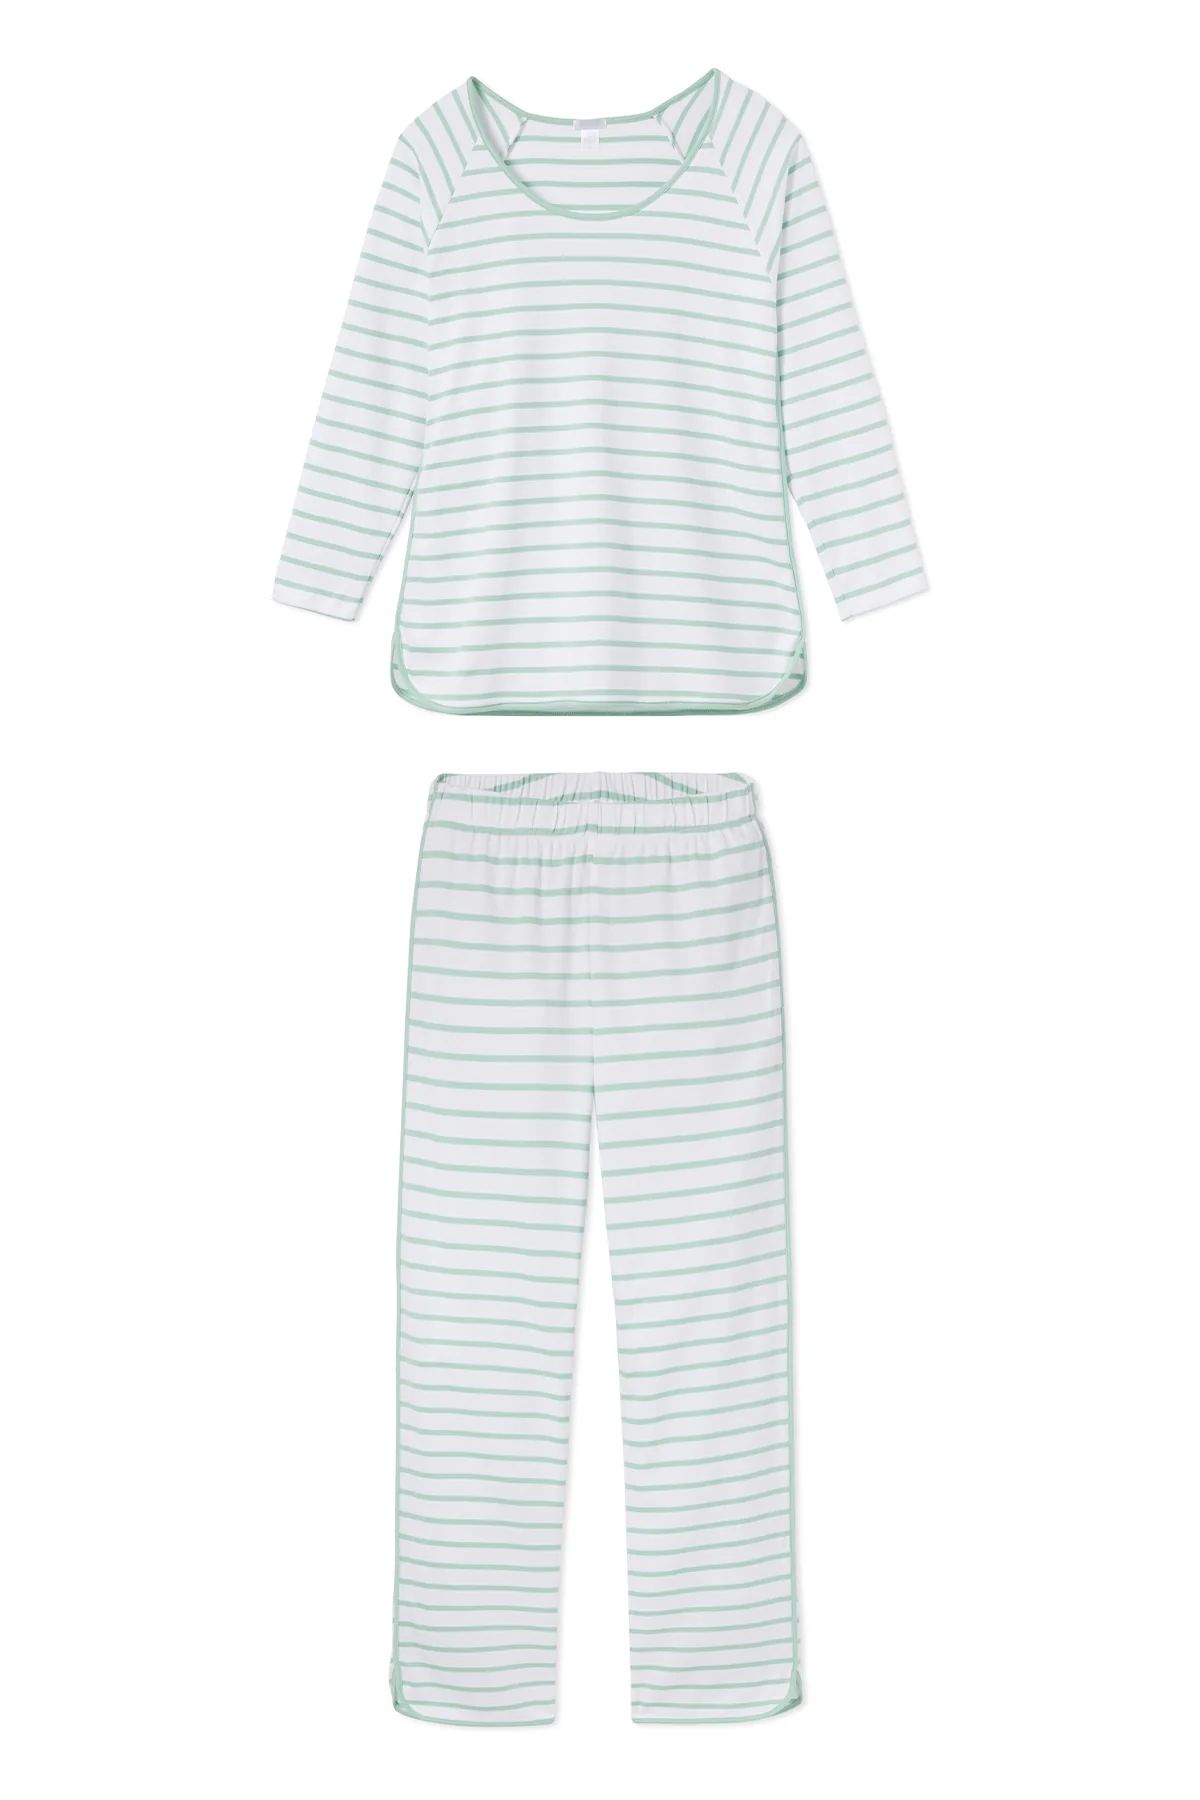 Pima Long-Long Set in Spring Green | LAKE Pajamas